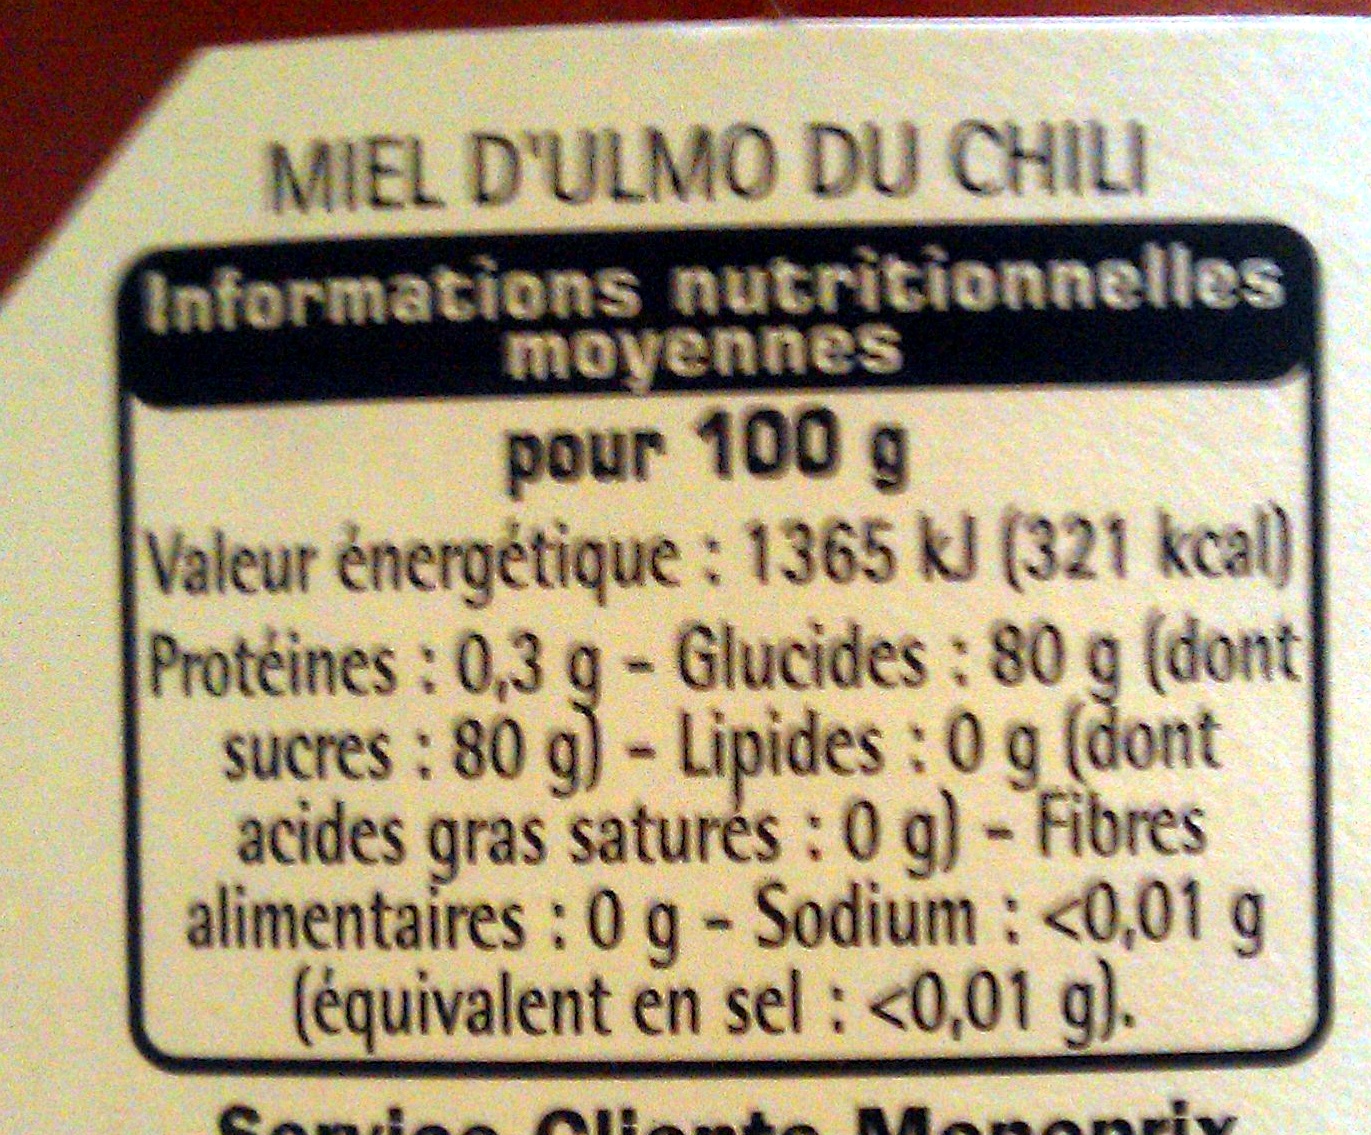 Miel d'ulmo du Chili - Informations nutritionnelles - fr